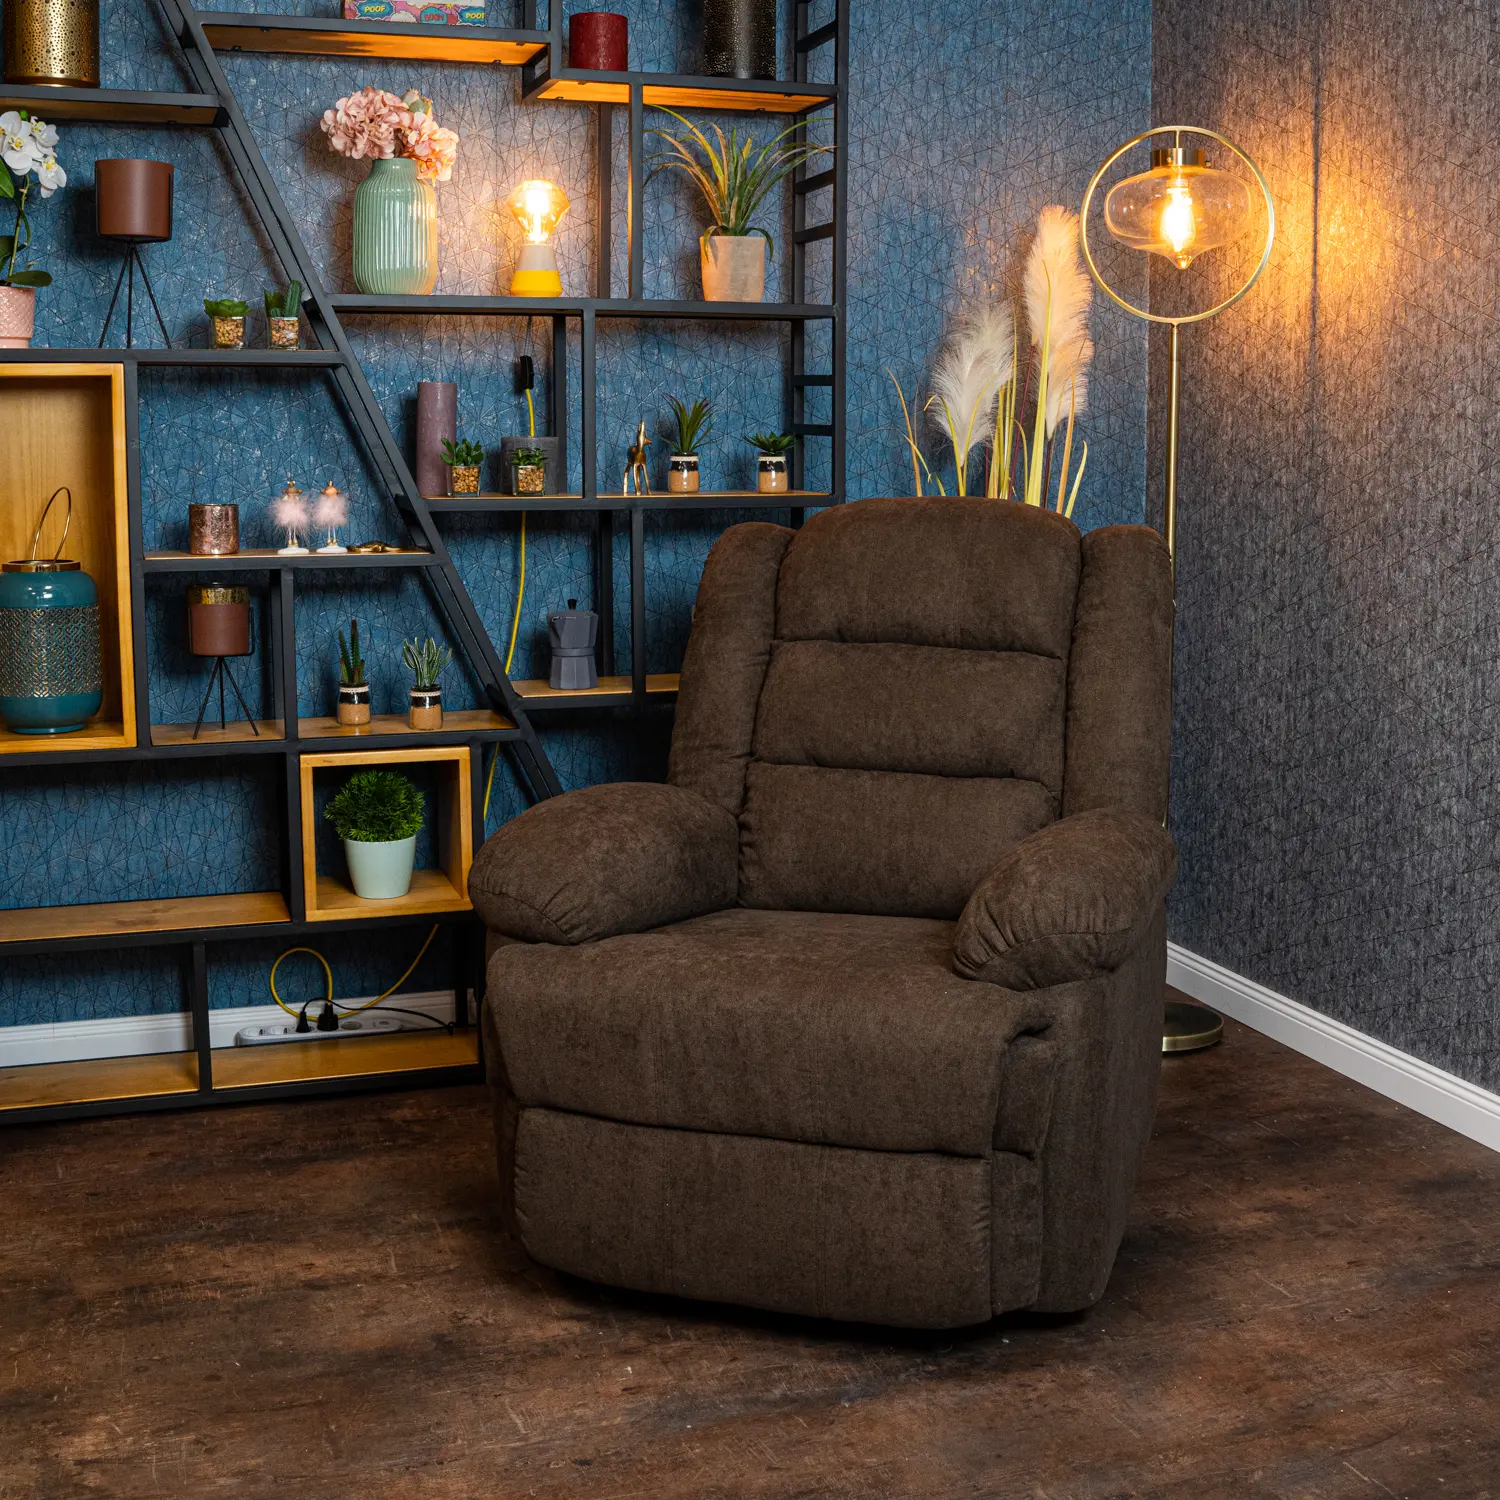 Fekvőfotel, relax fotelágy dönthető háttámlával, lábtartóval kávébarna szövet (8002-COFFEE)